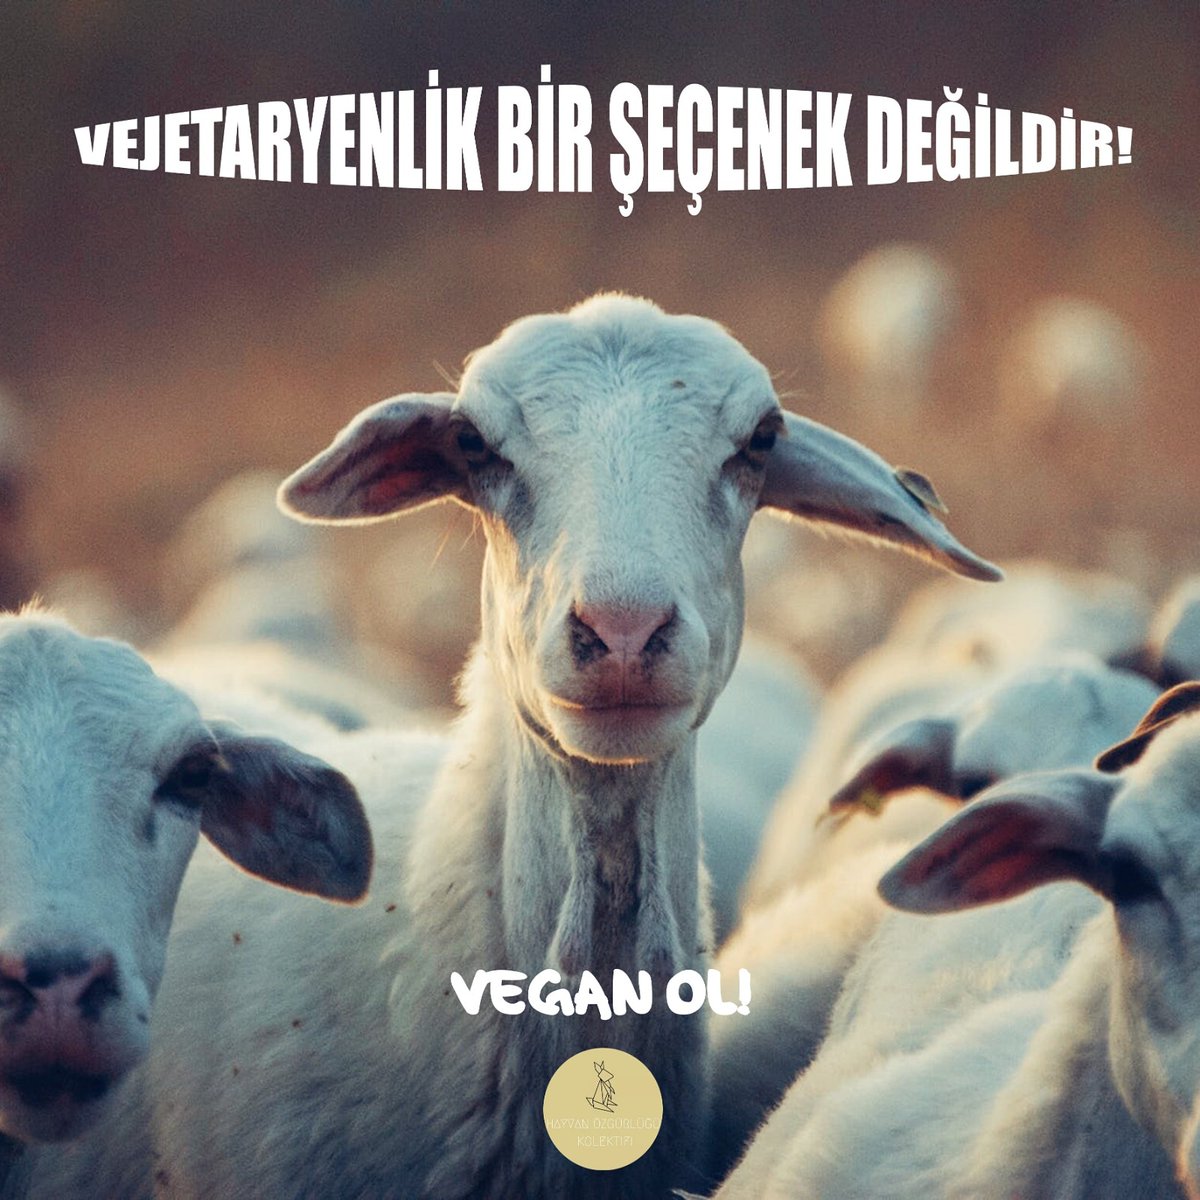 Vejetaryenlik bir seçenek değildir Hayvan sömürüsüne karşı çıkmak için bir adım da değildir. Hiçbir şiddet biçimini azaltarak bırakmayı savunamayız. Hayvan köleliğine karşı çıkmak istiyorsak,vegan olalım! #GoVegan #animalright #vegantürkiye #VeganOl #Turkey #Vegan #vegantarifler